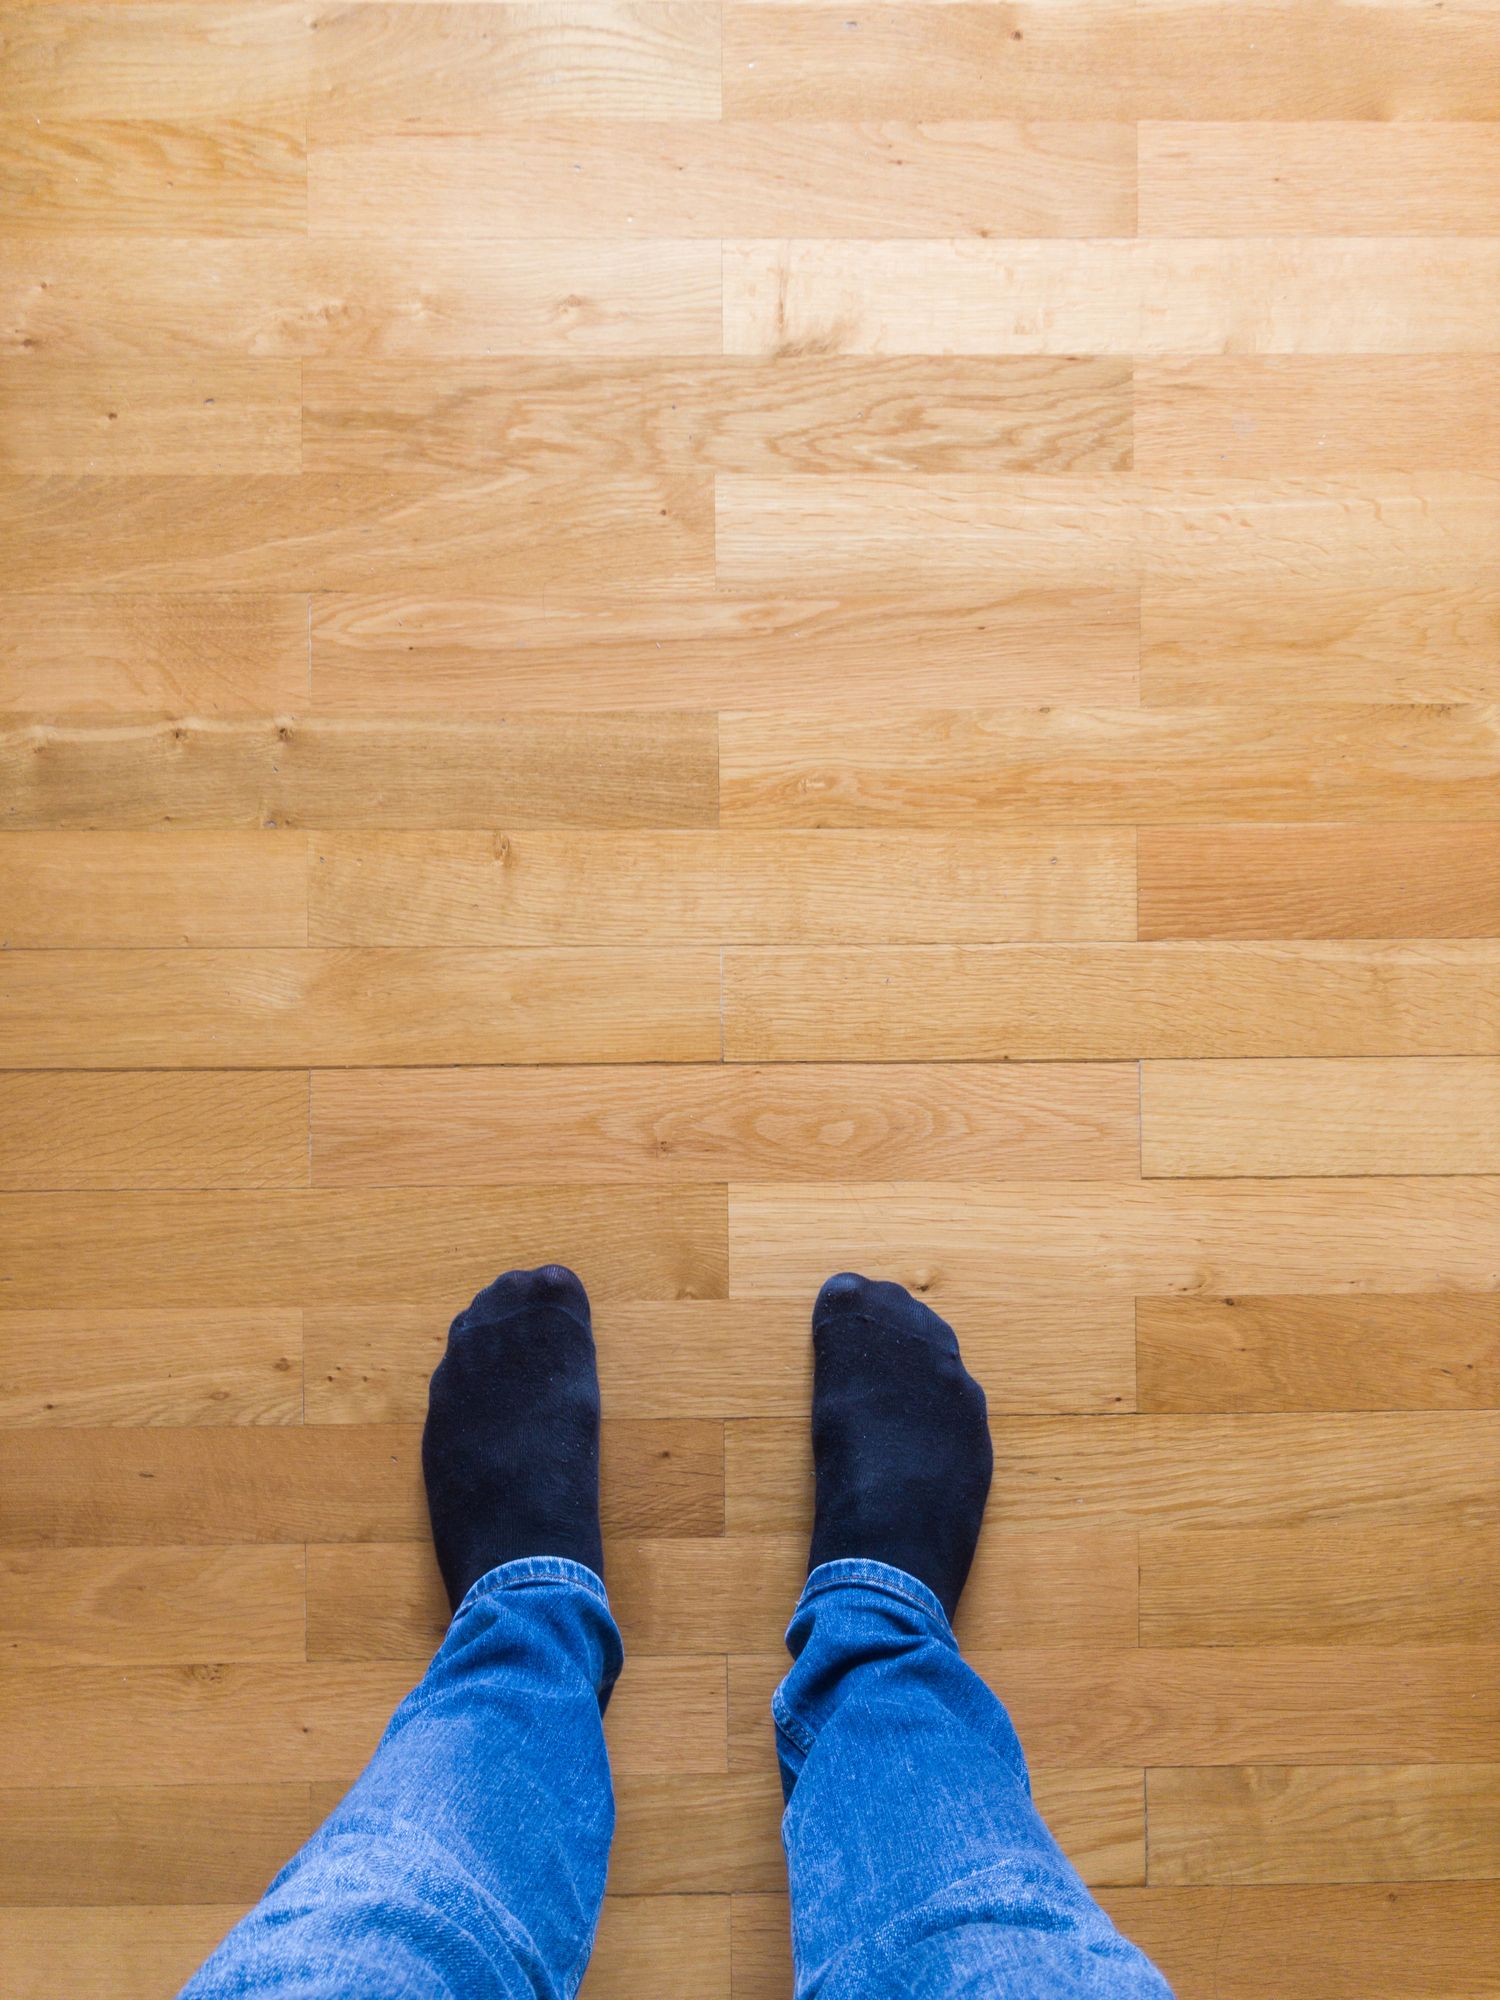 Squeaky Floor Repair, How To Get Super Glue Off Hardwood Floors